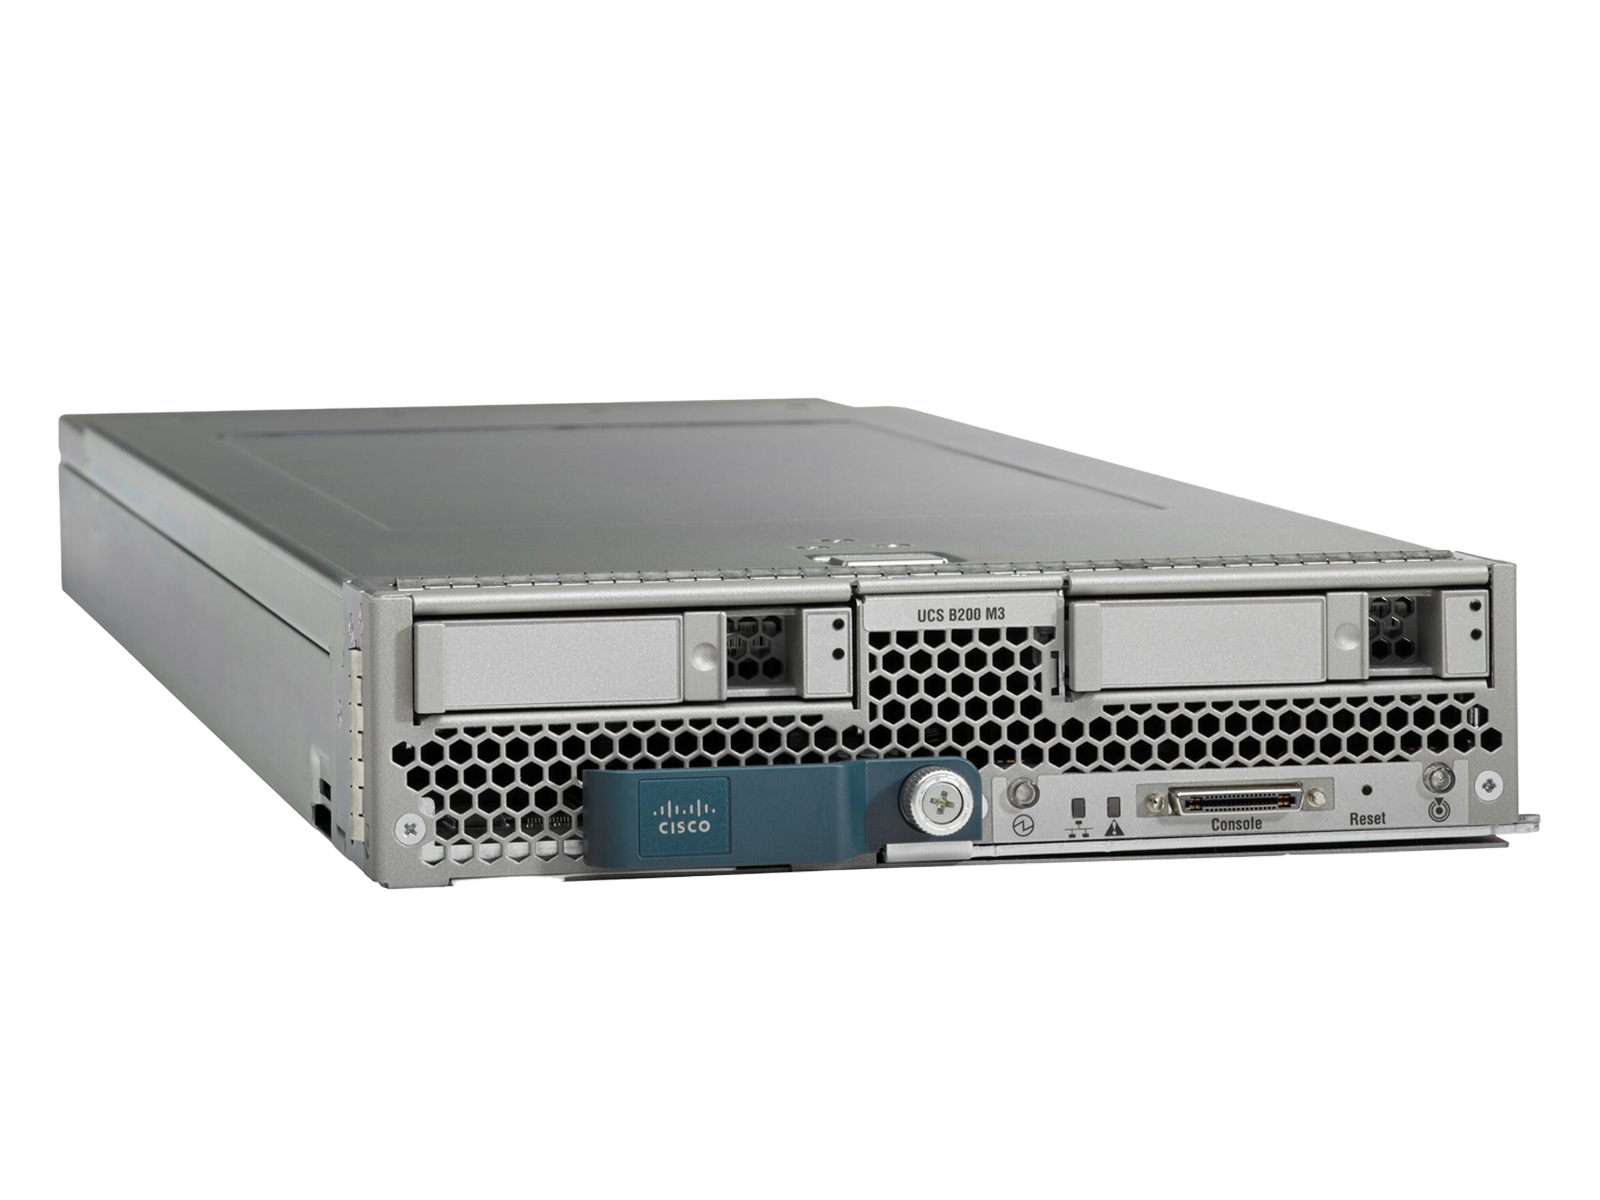 Cisco B200 M3 Two E5-2667 6C 8x 16GB-128GB Ram Blade Server VIC1240 12C 2x SFF.